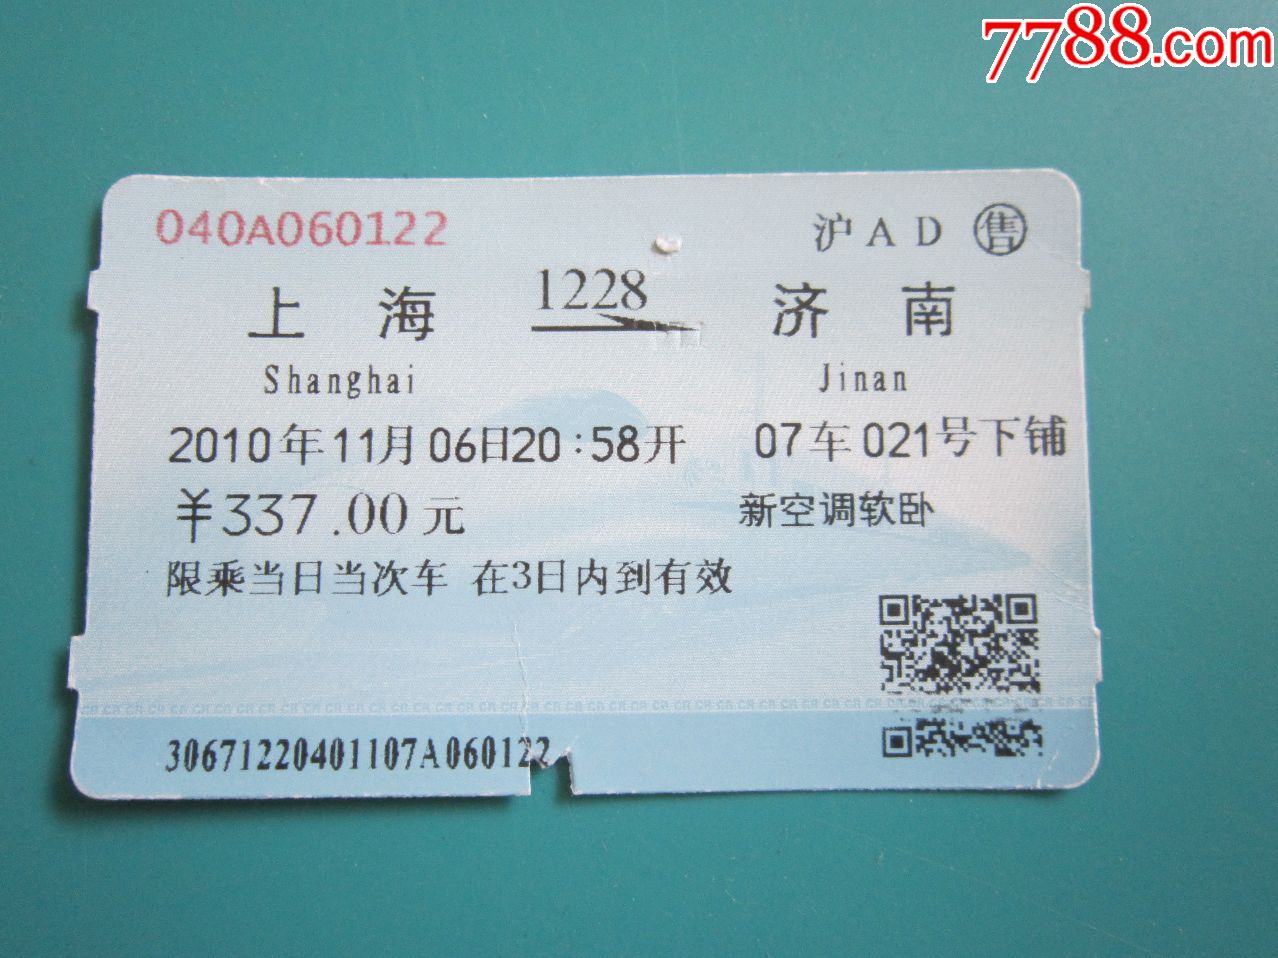 上海-济南1228次火车票